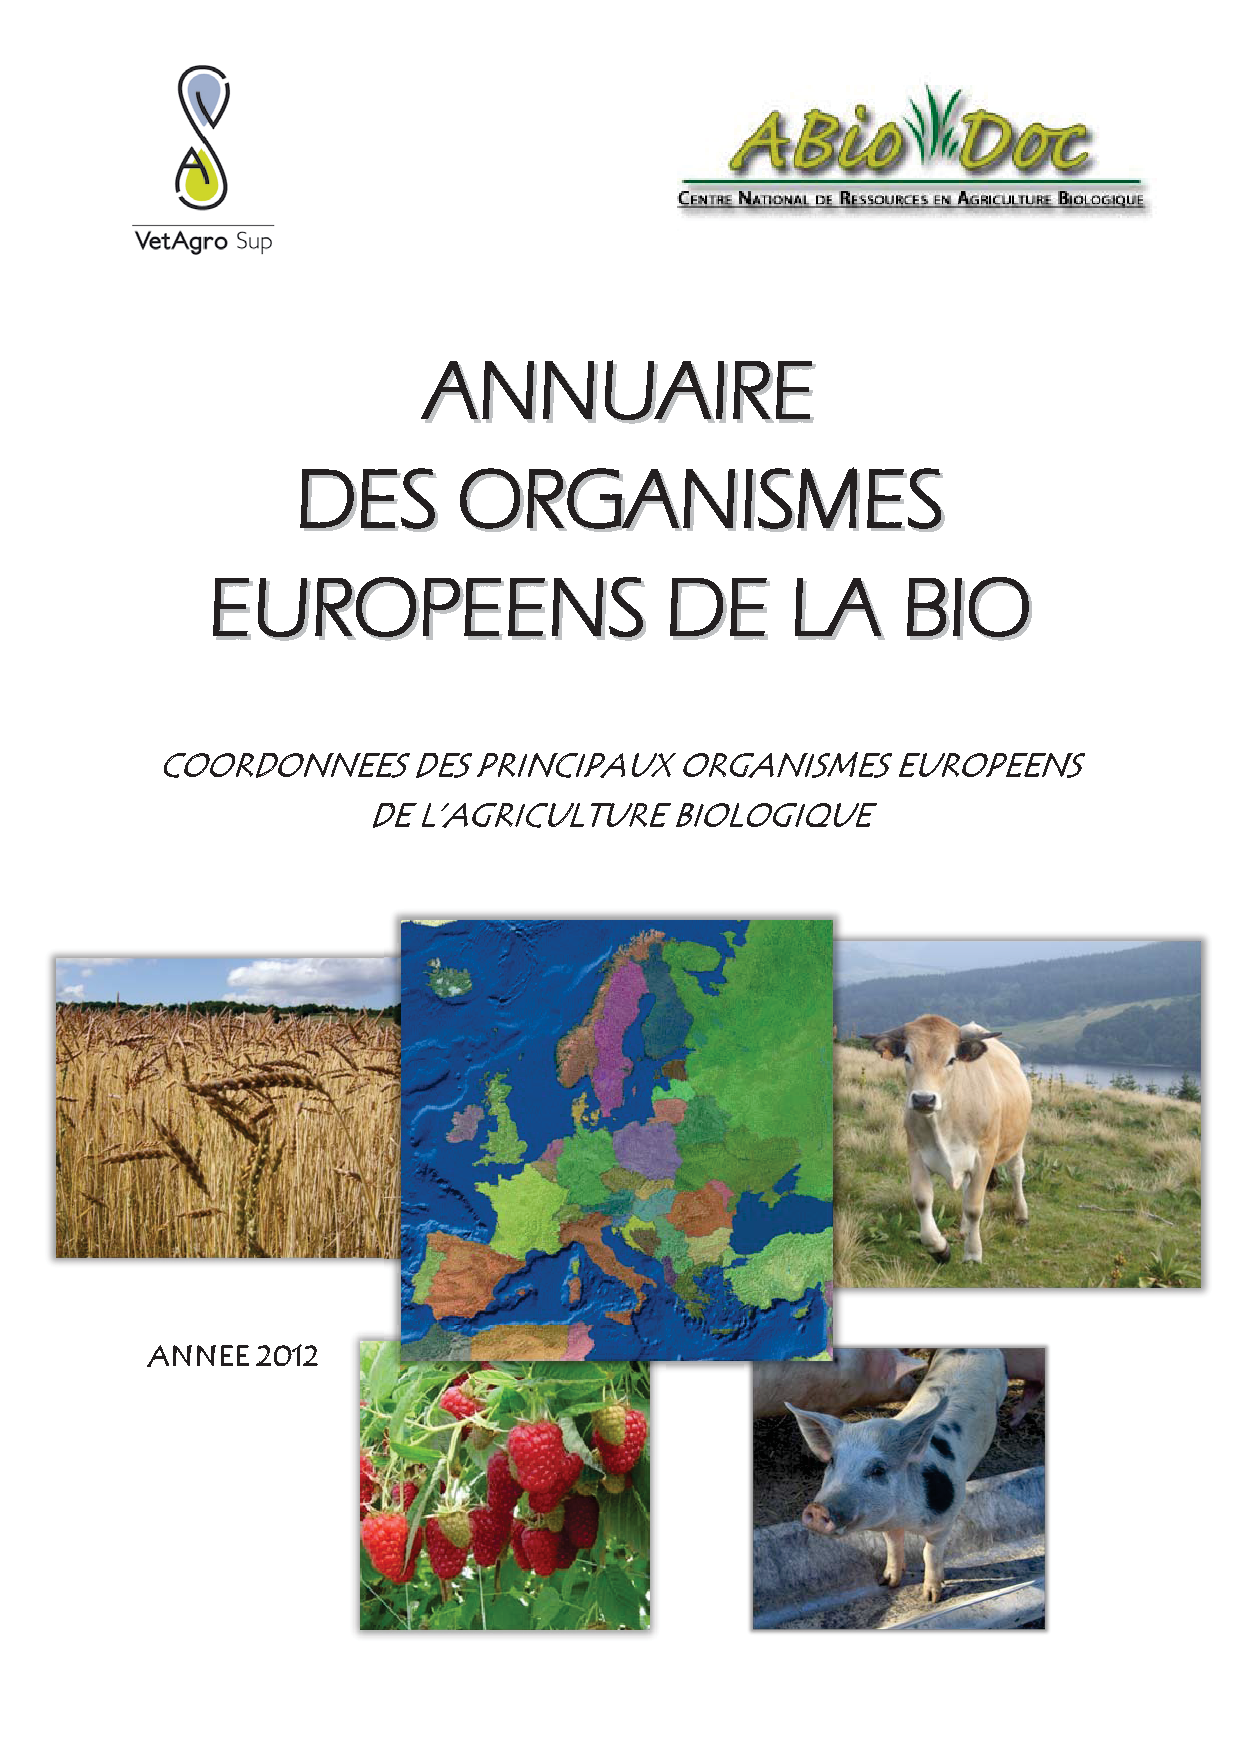 2012_annuaire_des_organismes_europeens_de_la_bio.png